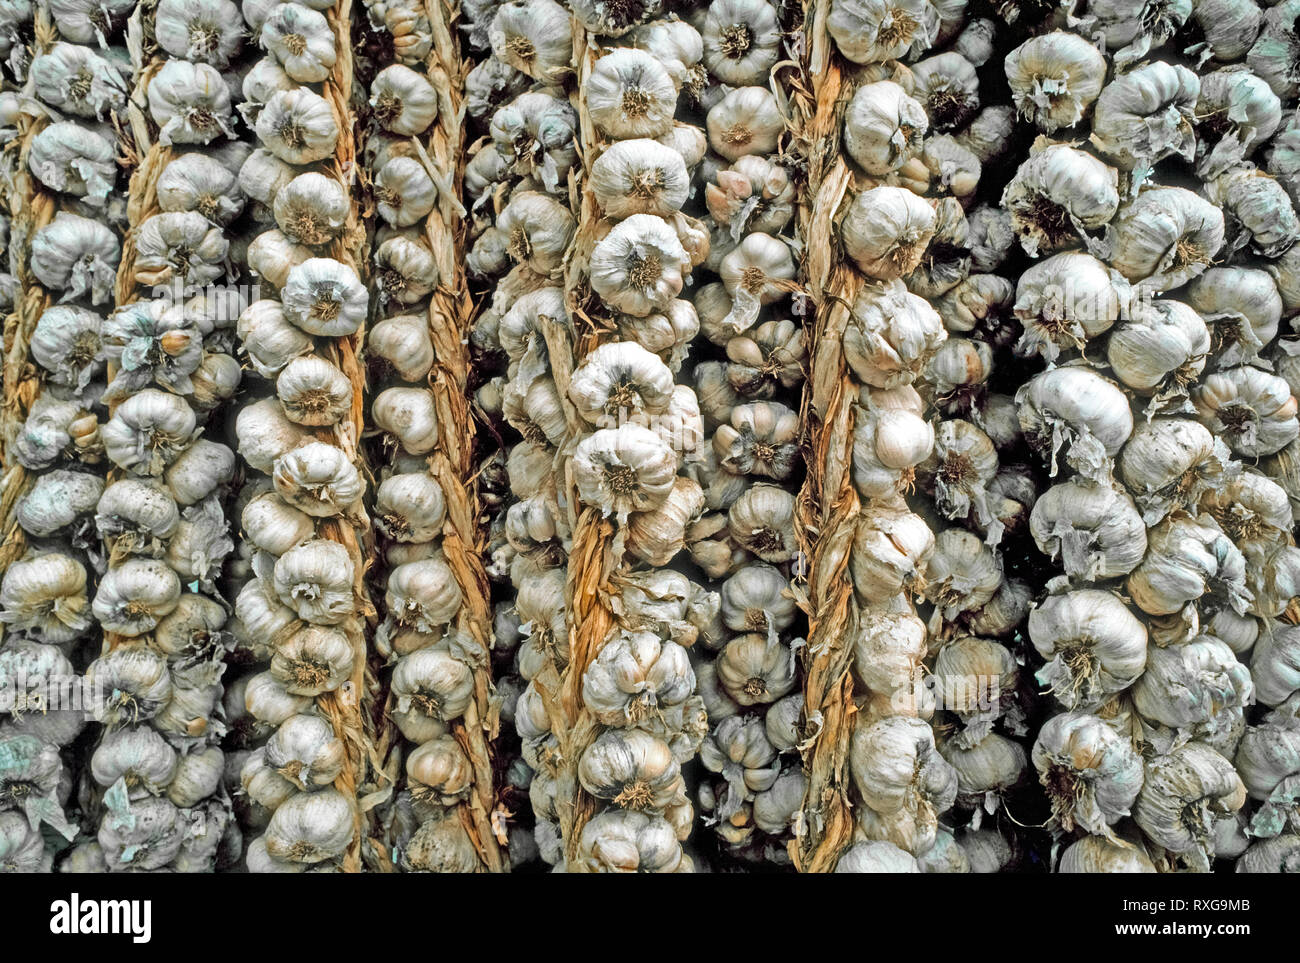 Un close-up de cordes d'ail, une plante bulbeuse (Allium sativum) utilisé dans le monde entier comme un puissant arôme dans la cuisine. Chaque tête d'ail dispose de 10 à 20 segments, qui sont appelés gousses. De filets et de raccrocher l'ail pour l'exposition à l'air est une façon traditionnelle de l'ail sec après la récolte du sous-sol. Cela garde l'humidité dans les gousses d'ail qui sont enfermés dans leurs propres skins papyracées. Cordes d'ail sont parfois accrochés pour la décoration ou pour la bonne chance dans les foyers et les entreprises, en particulier les restaurants, où ils peuvent être suspendus au-dessus de la porte d'entrée pour écarter le mal s Banque D'Images